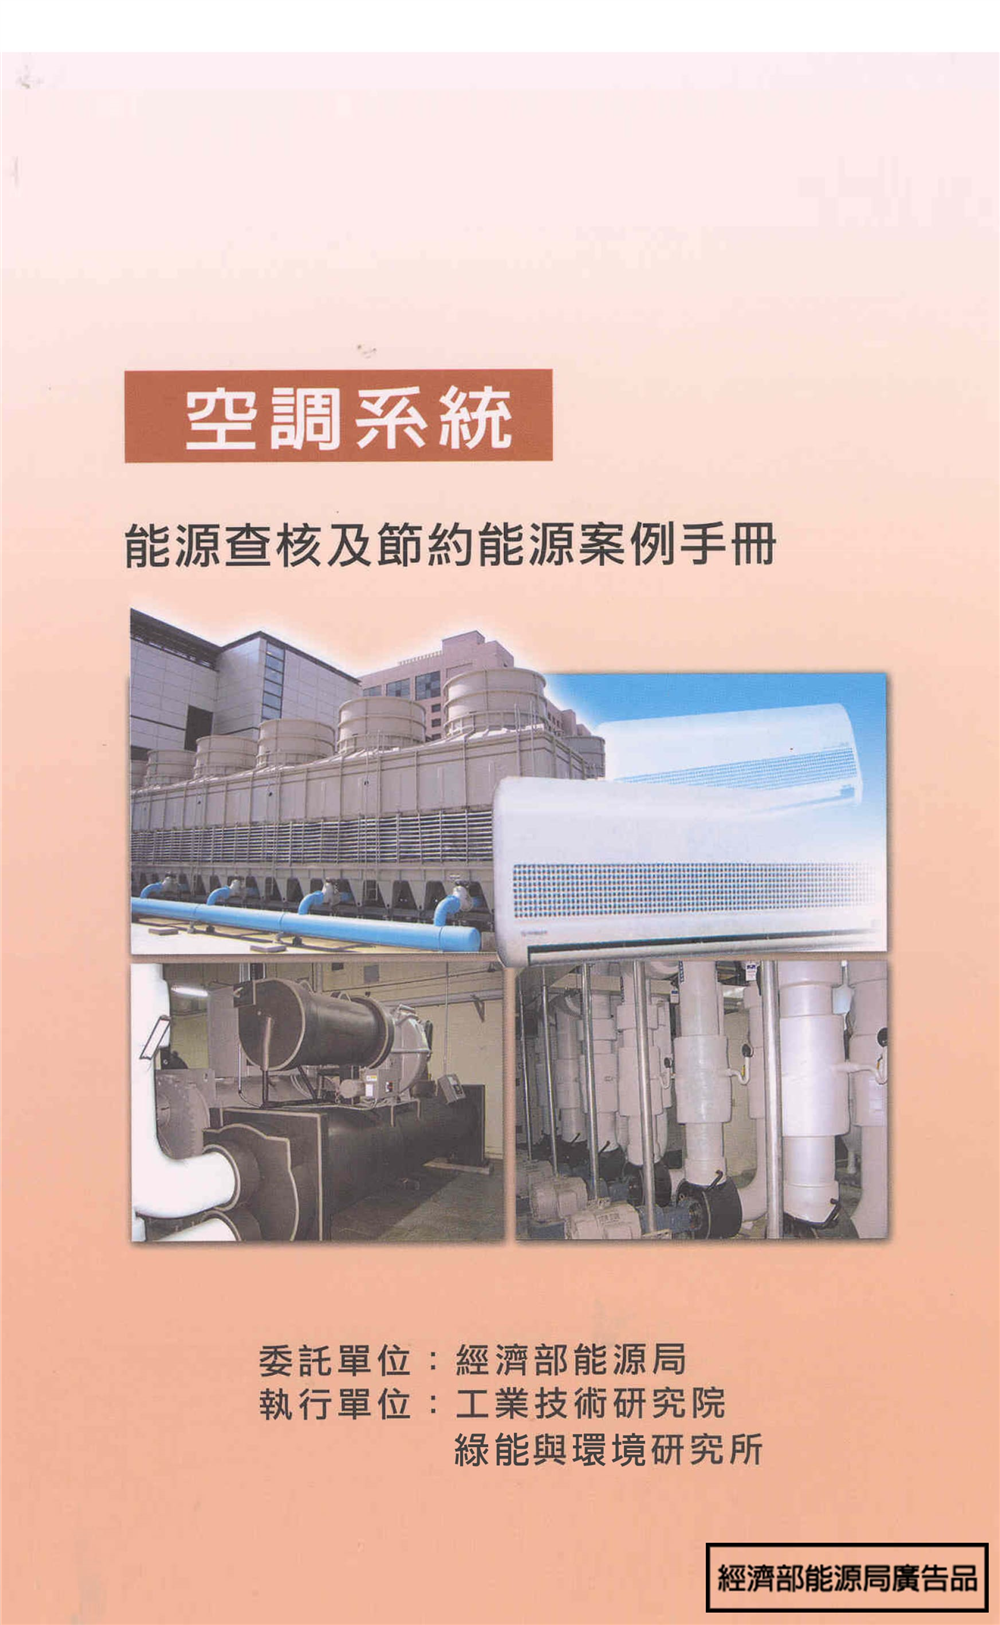 能源查核與節約能源案例手冊-空調系統 的封面圖